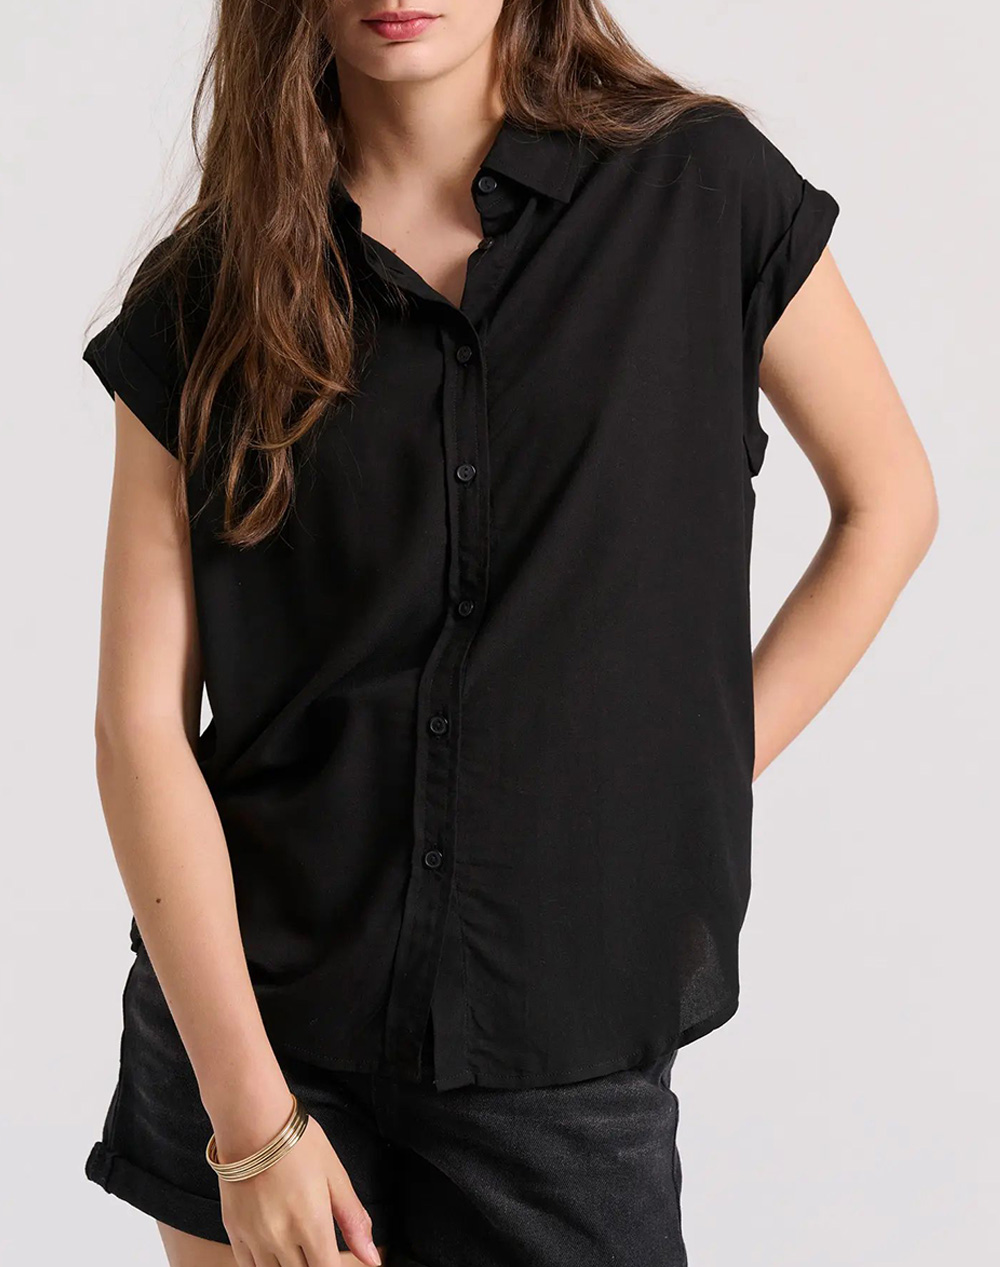 FUNKY BUDDHA Γυναικείο μονόχρωμο πουκάμισο από βισκόζη FBL009-100-05-BLACK Black